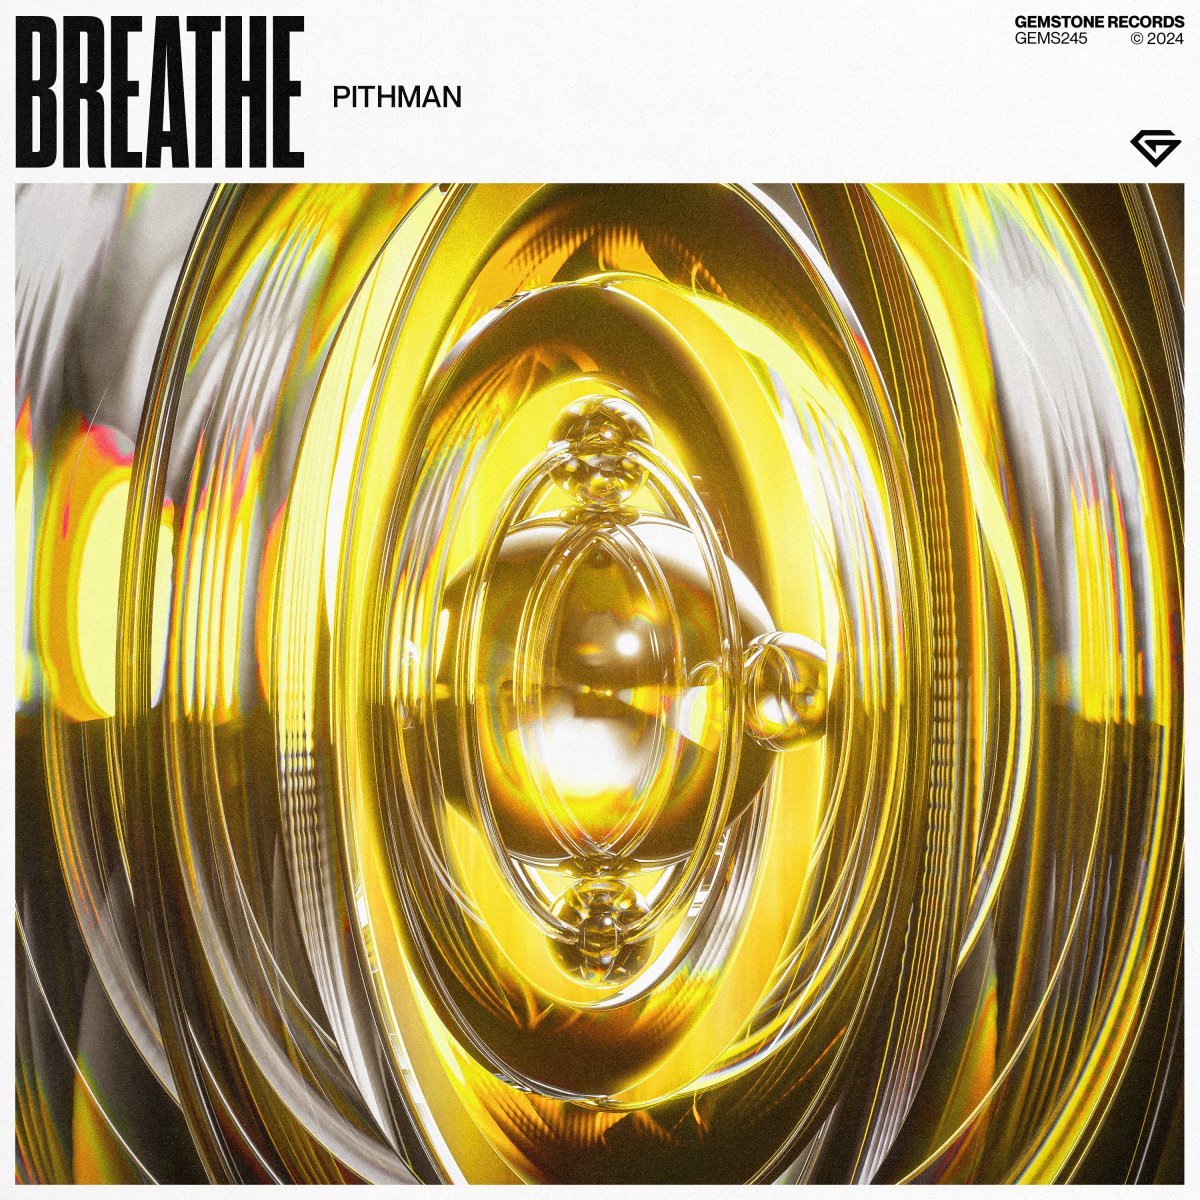 Breathe - Pithman⁠ 